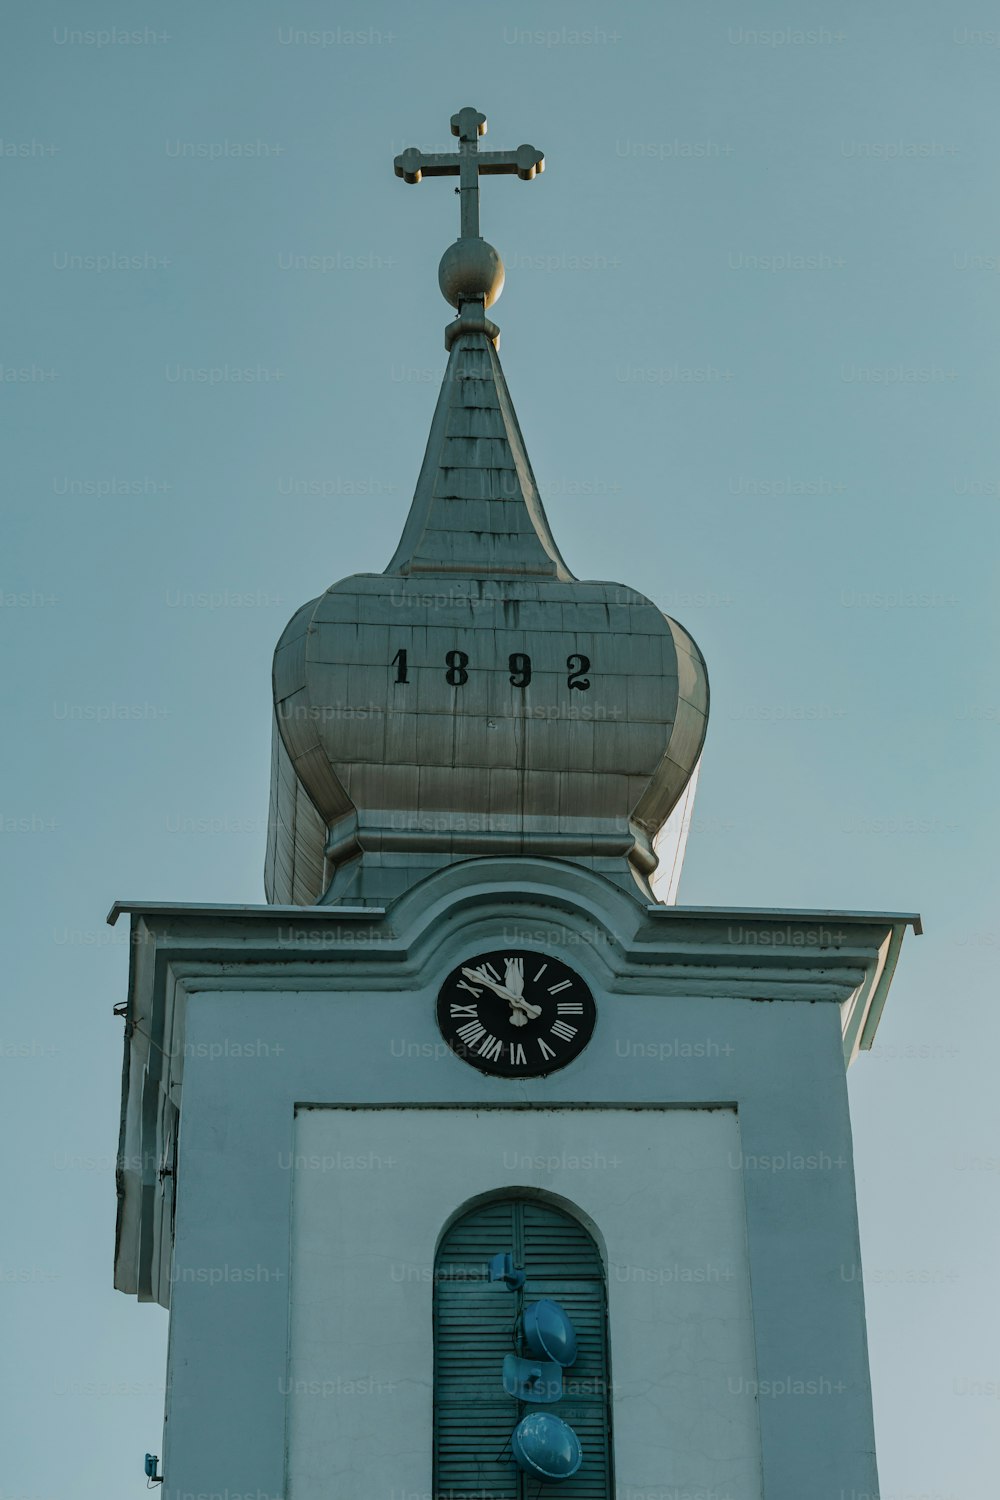 그 위에 십자가가 있��는 시계탑